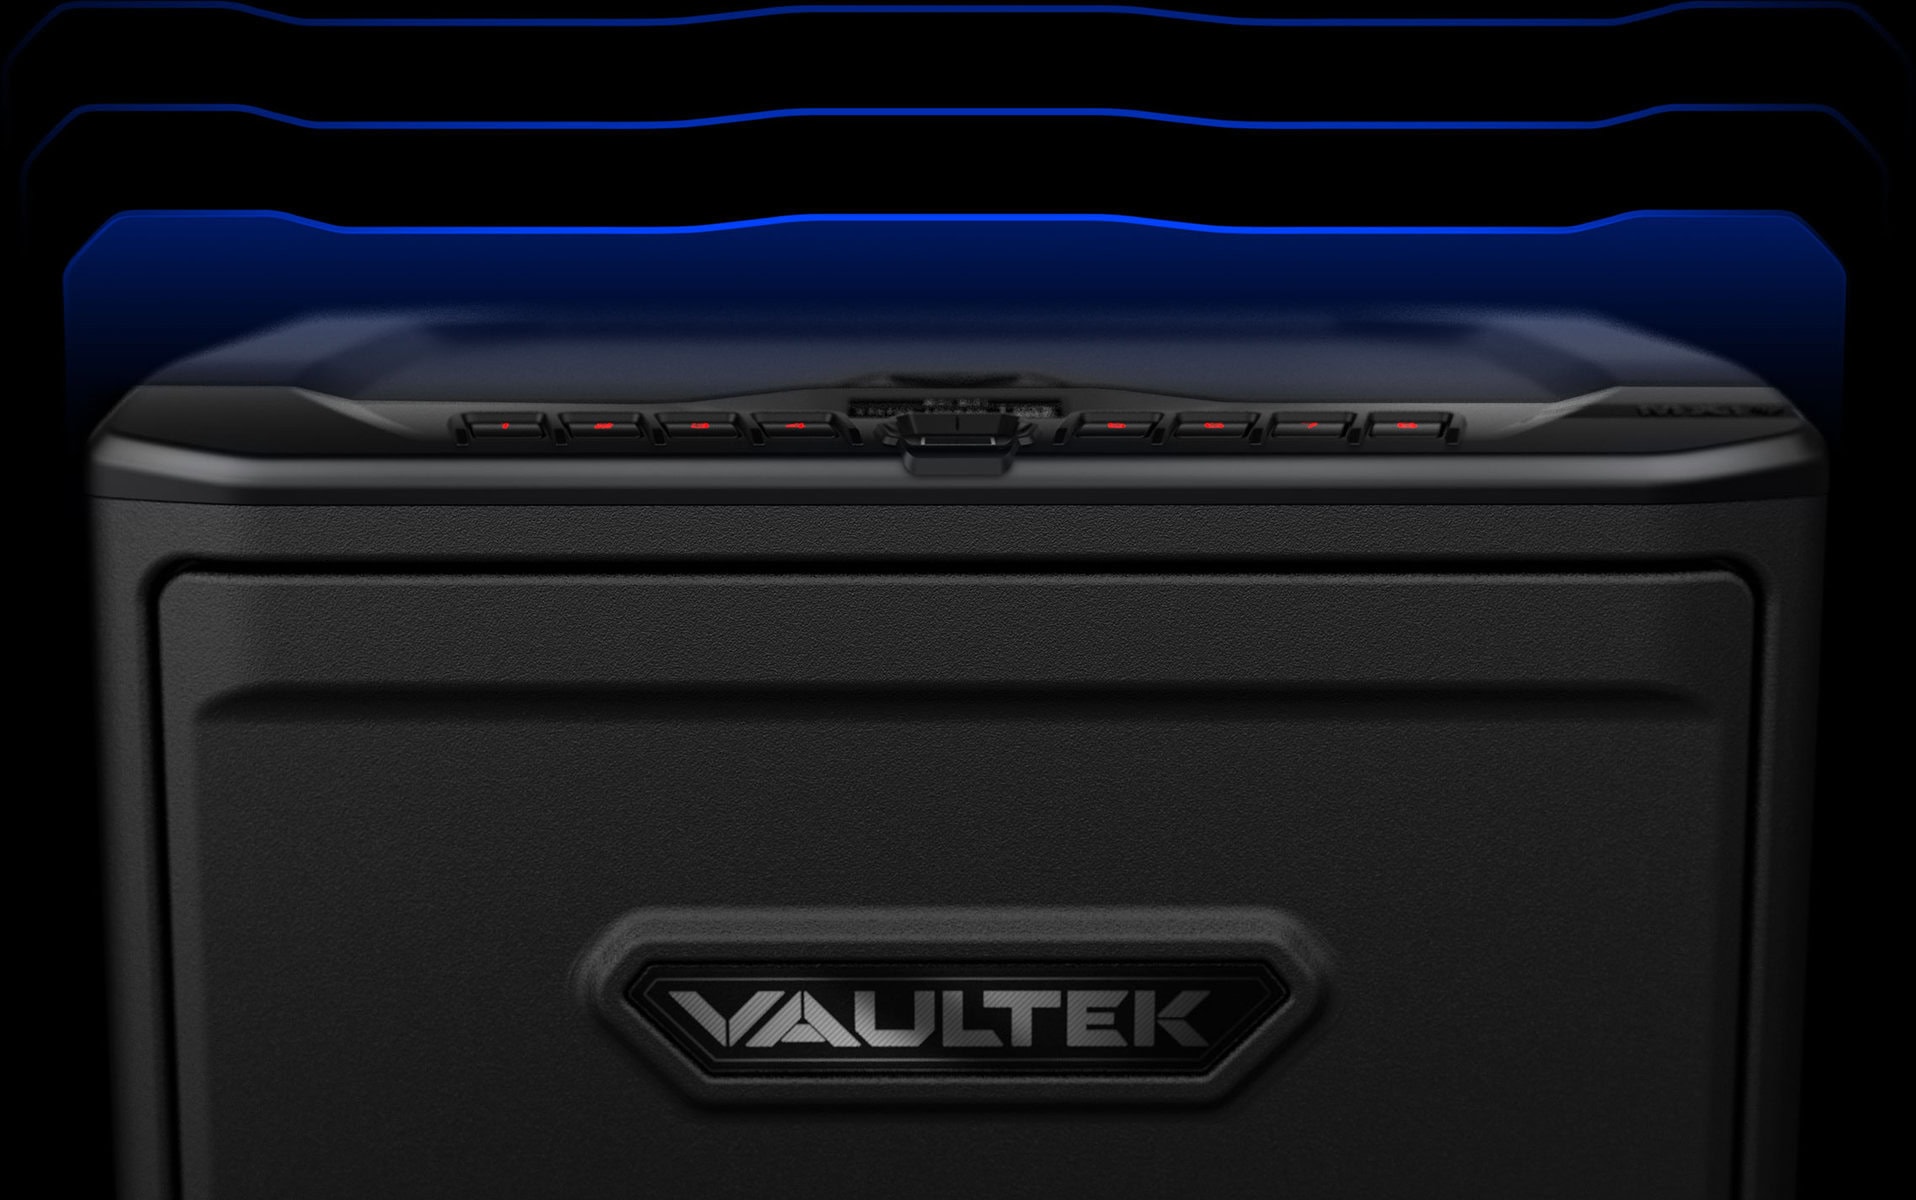 Vaultek Safe | VAULTEK® View all MX Series